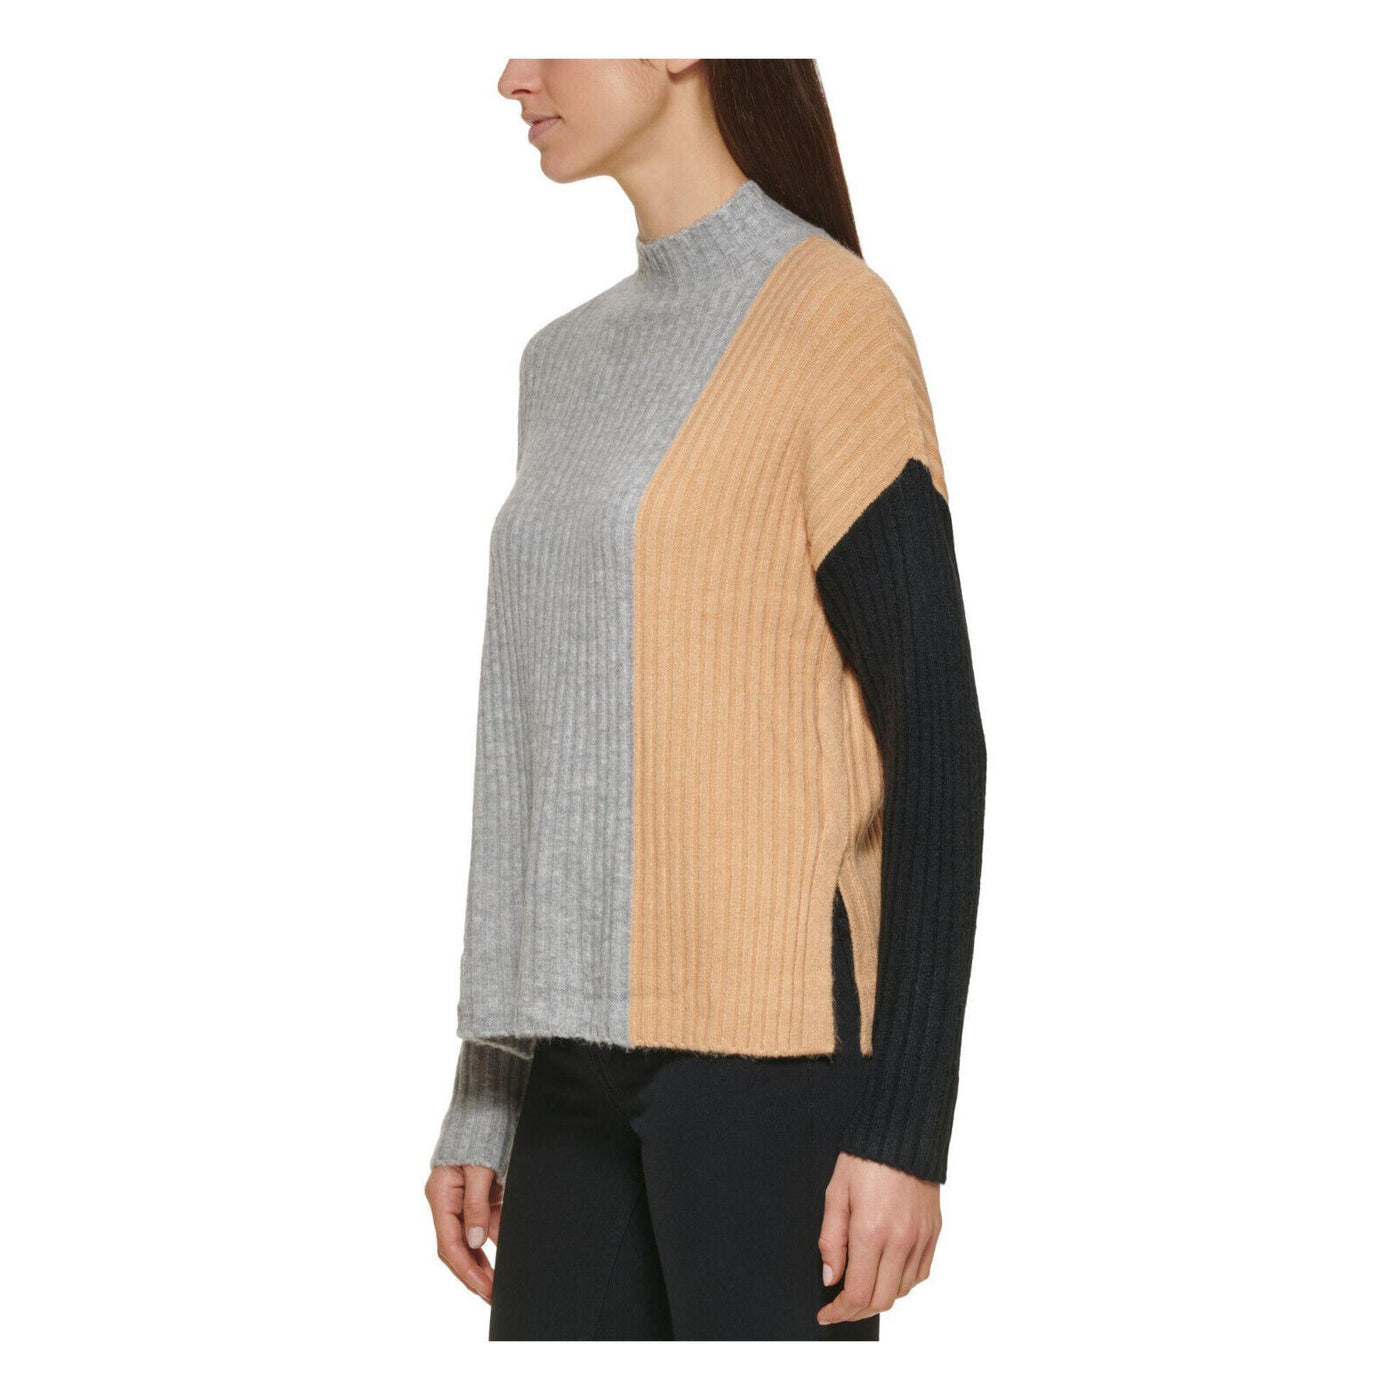 Calvin Klein Colorblocked Suéter MSRP $ 89 Tamaño L # 5C 2428 NUEVO